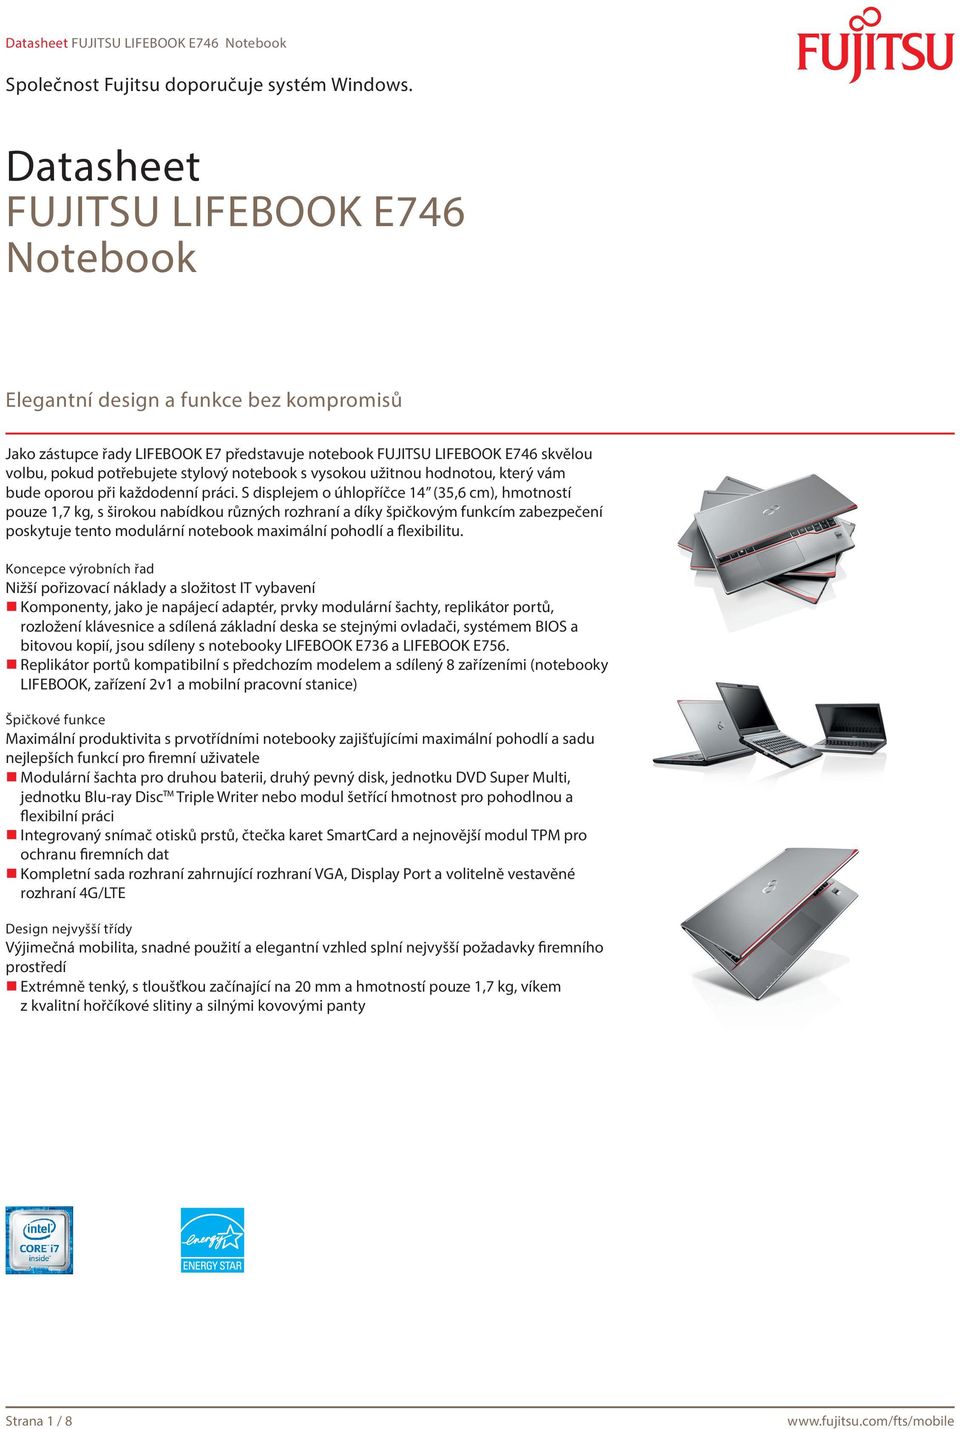 S displejem o úhlopříčce 14 (35,6 cm), hmotností pouze 1,7 kg, s širokou nabídkou různých rozhraní a díky špičkovým funkcím zabezpečení poskytuje tento modulární notebook maximální pohodlí a